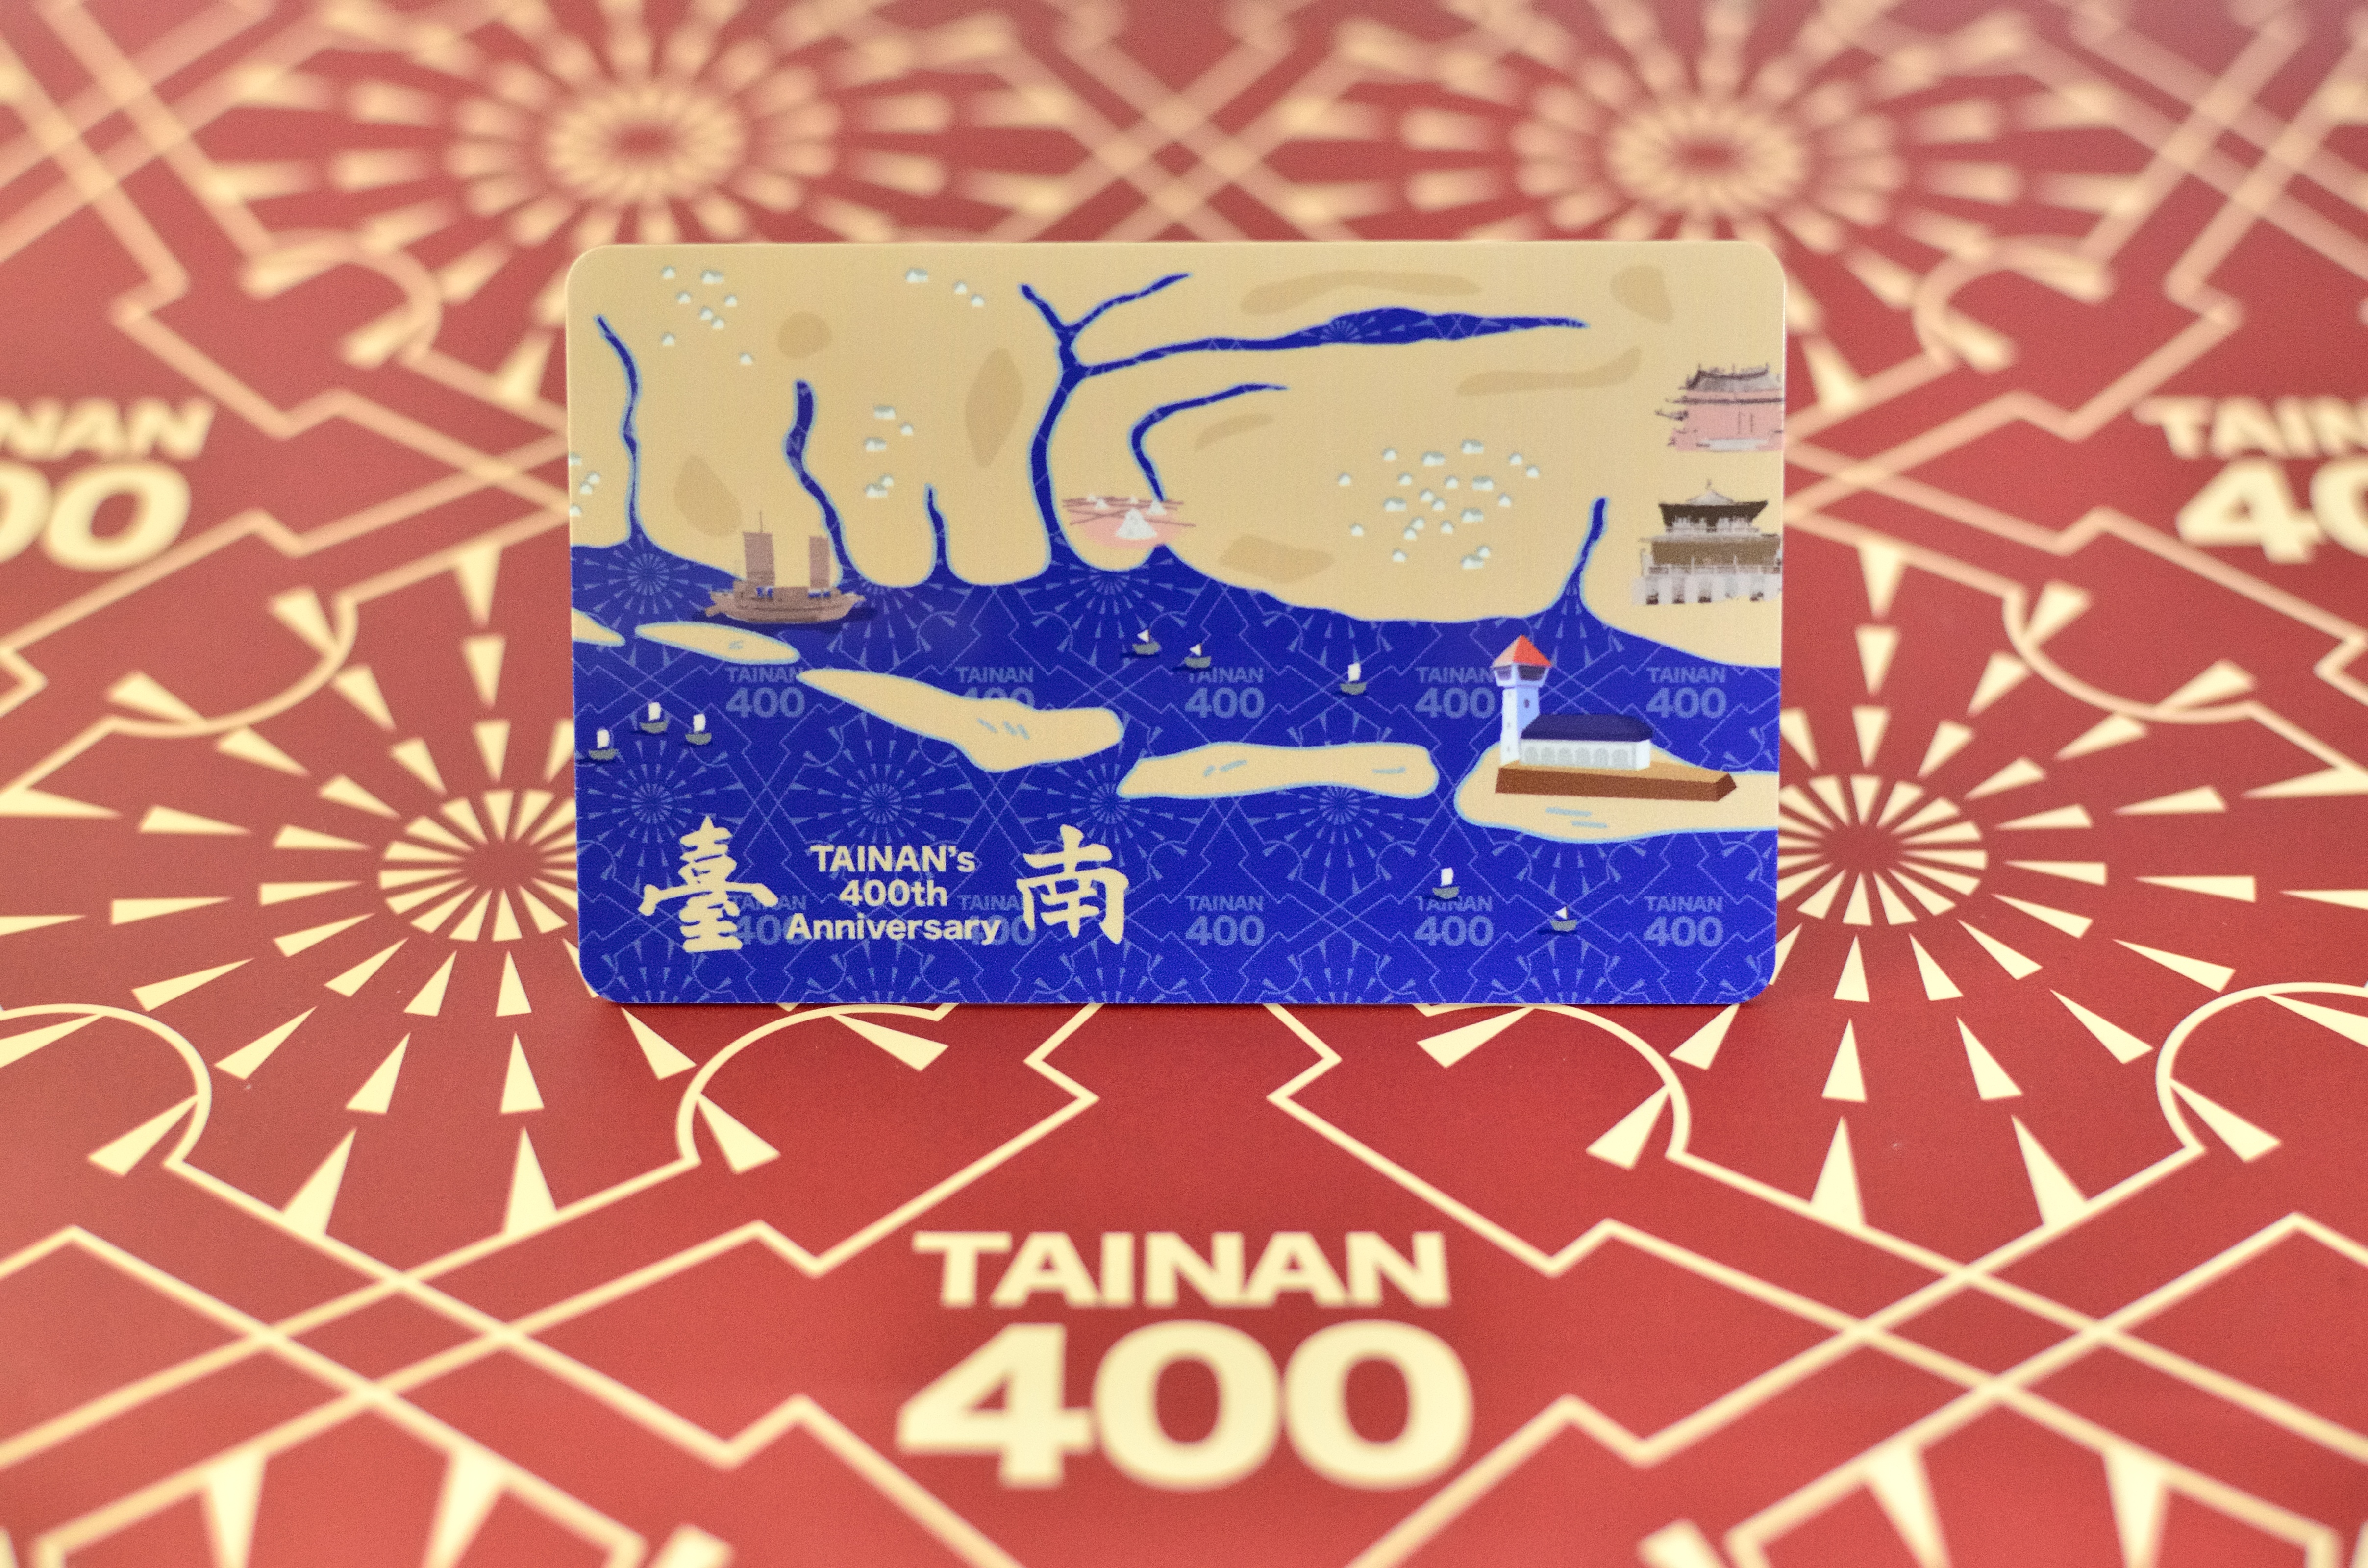 臺南400一般卡藍款